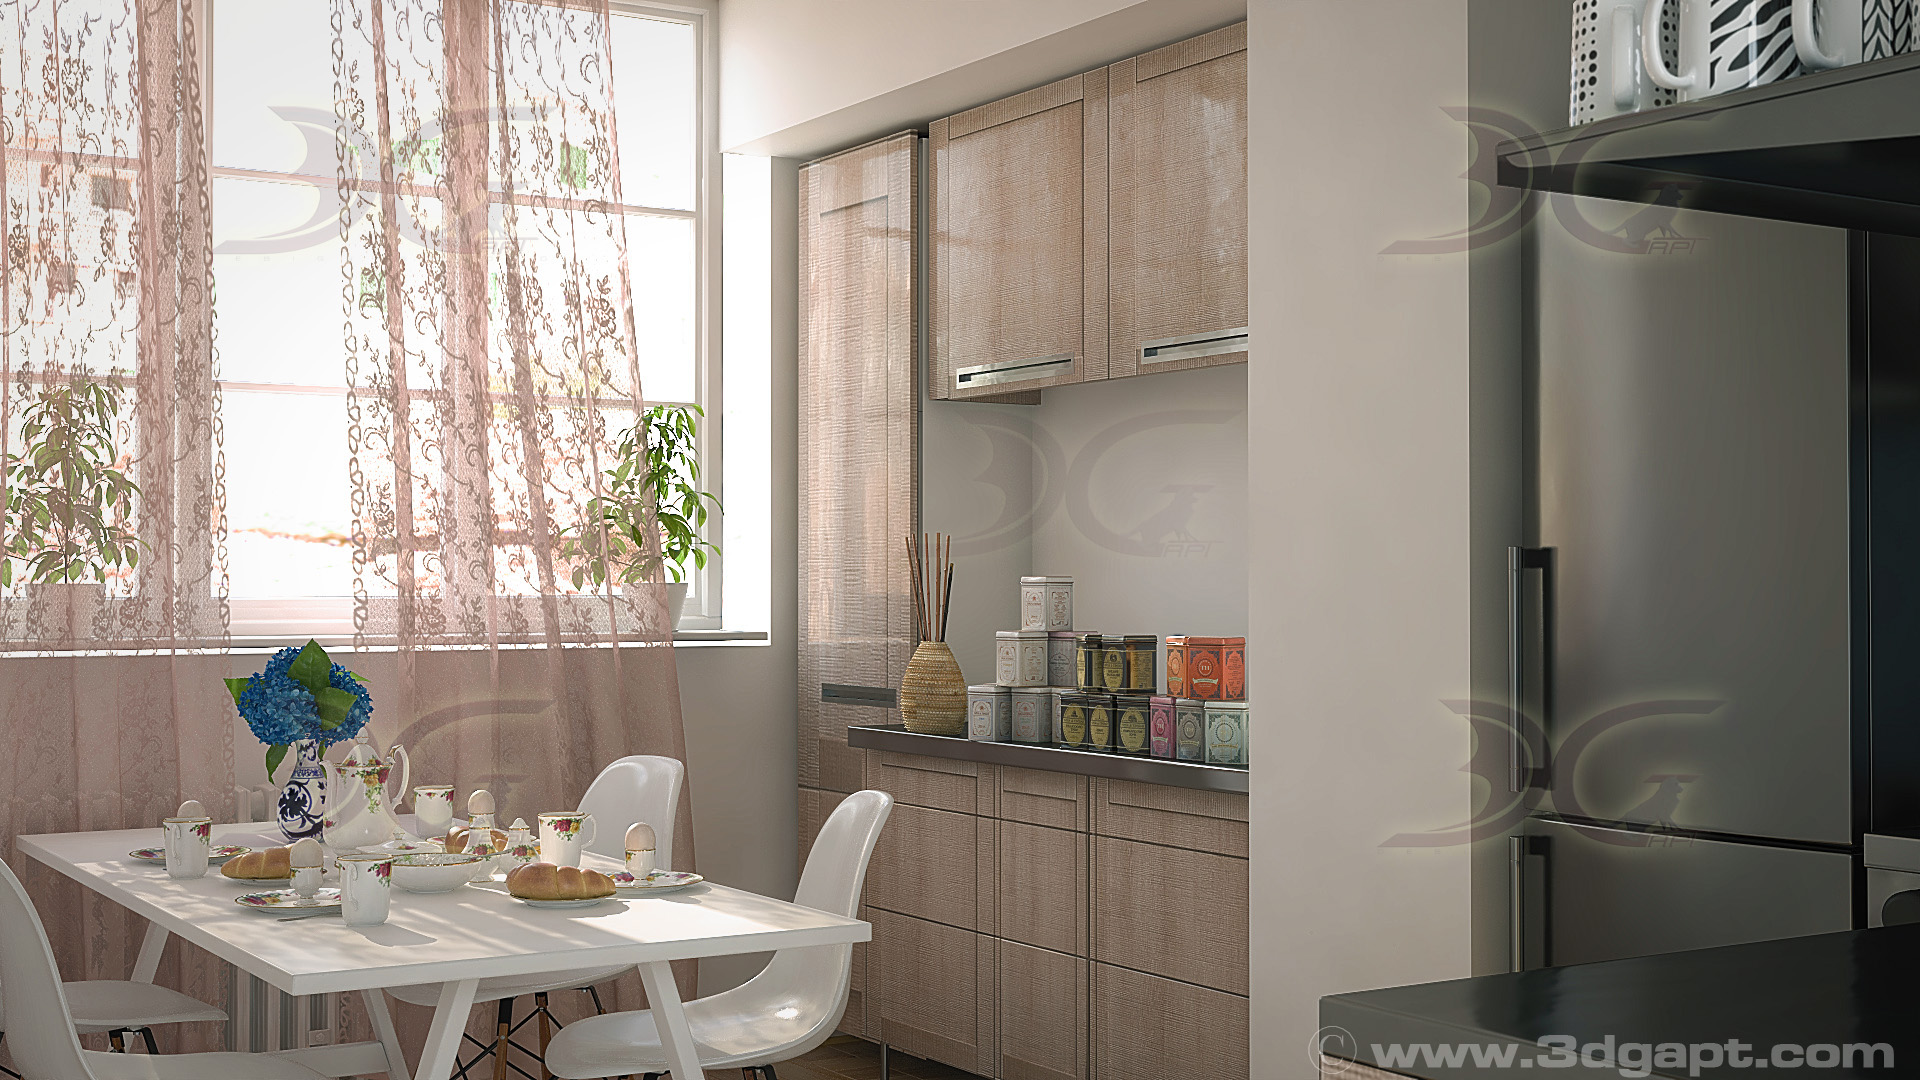 architecture interior kitchen-2versions 011